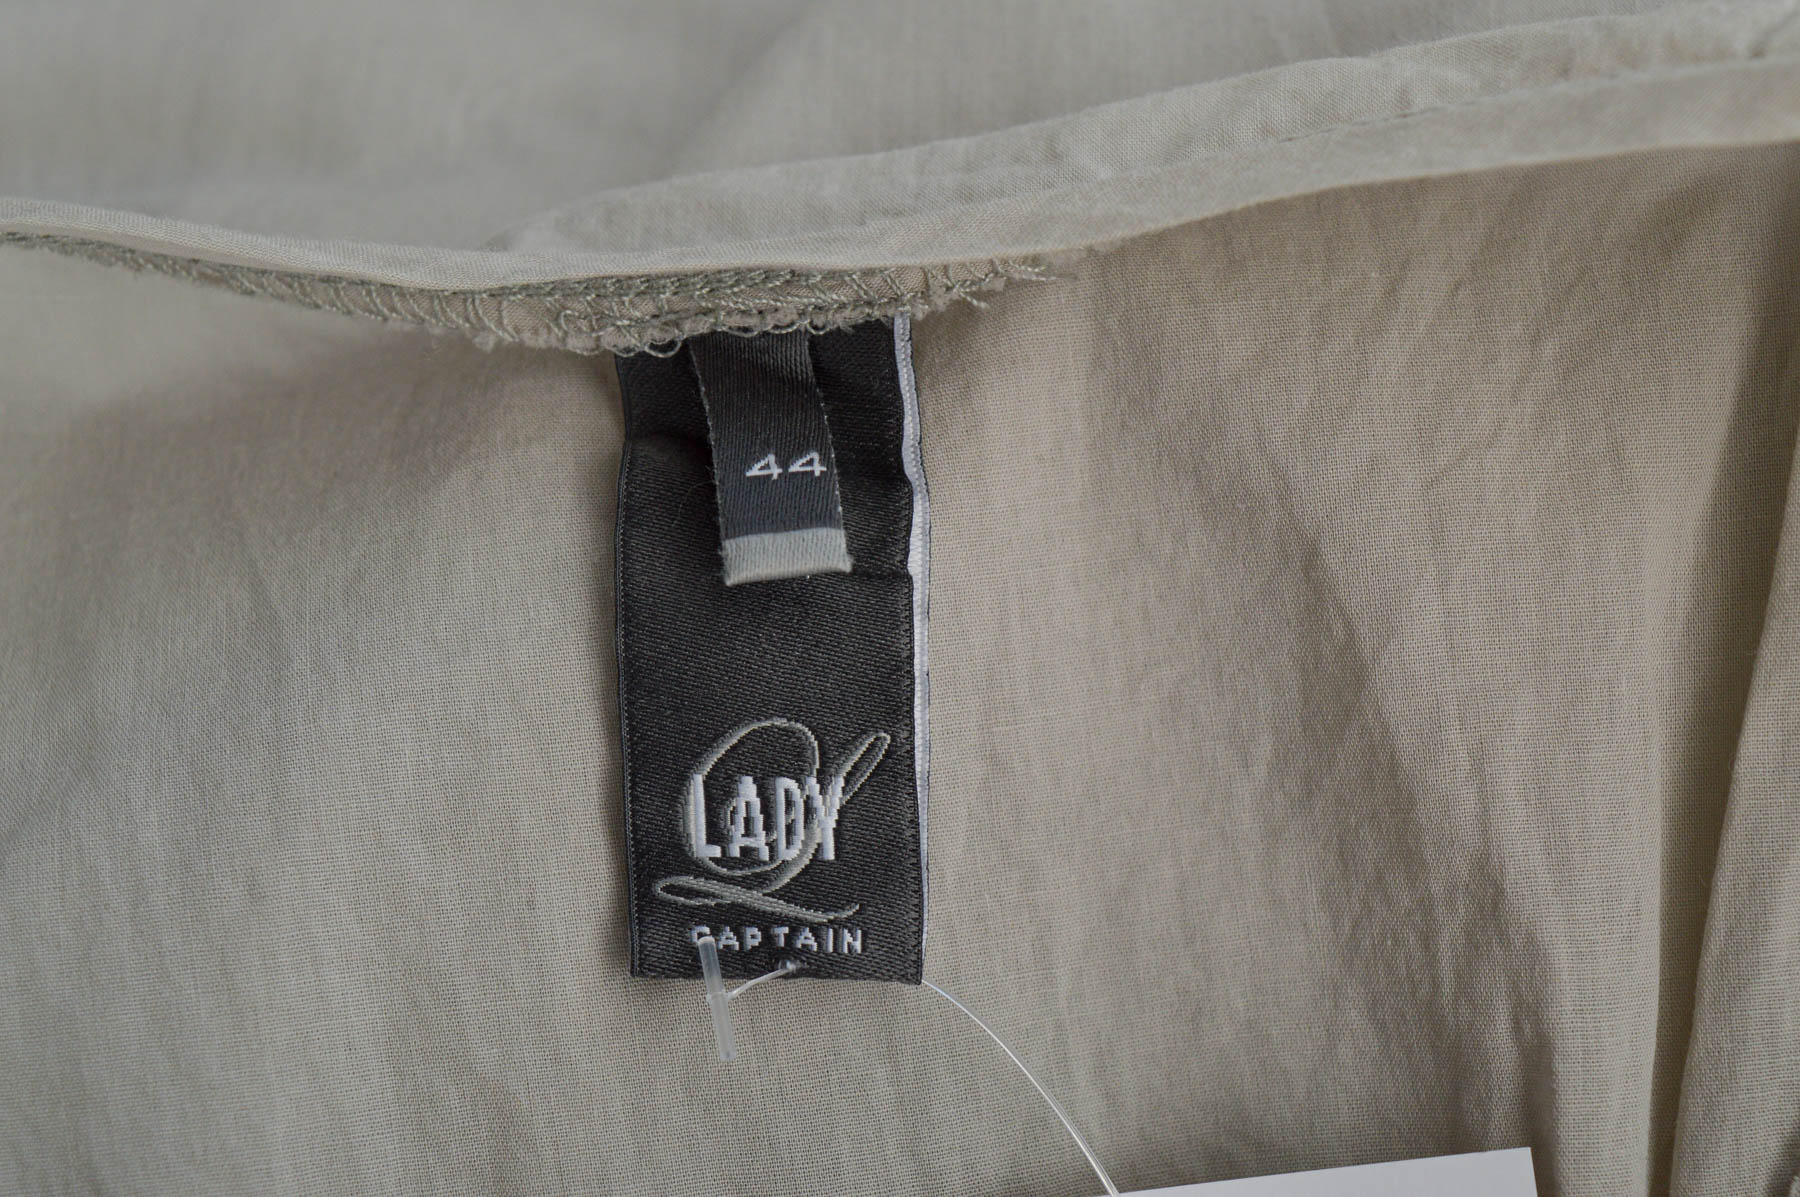 Women's shirt - LADY CAPTAIN - 2